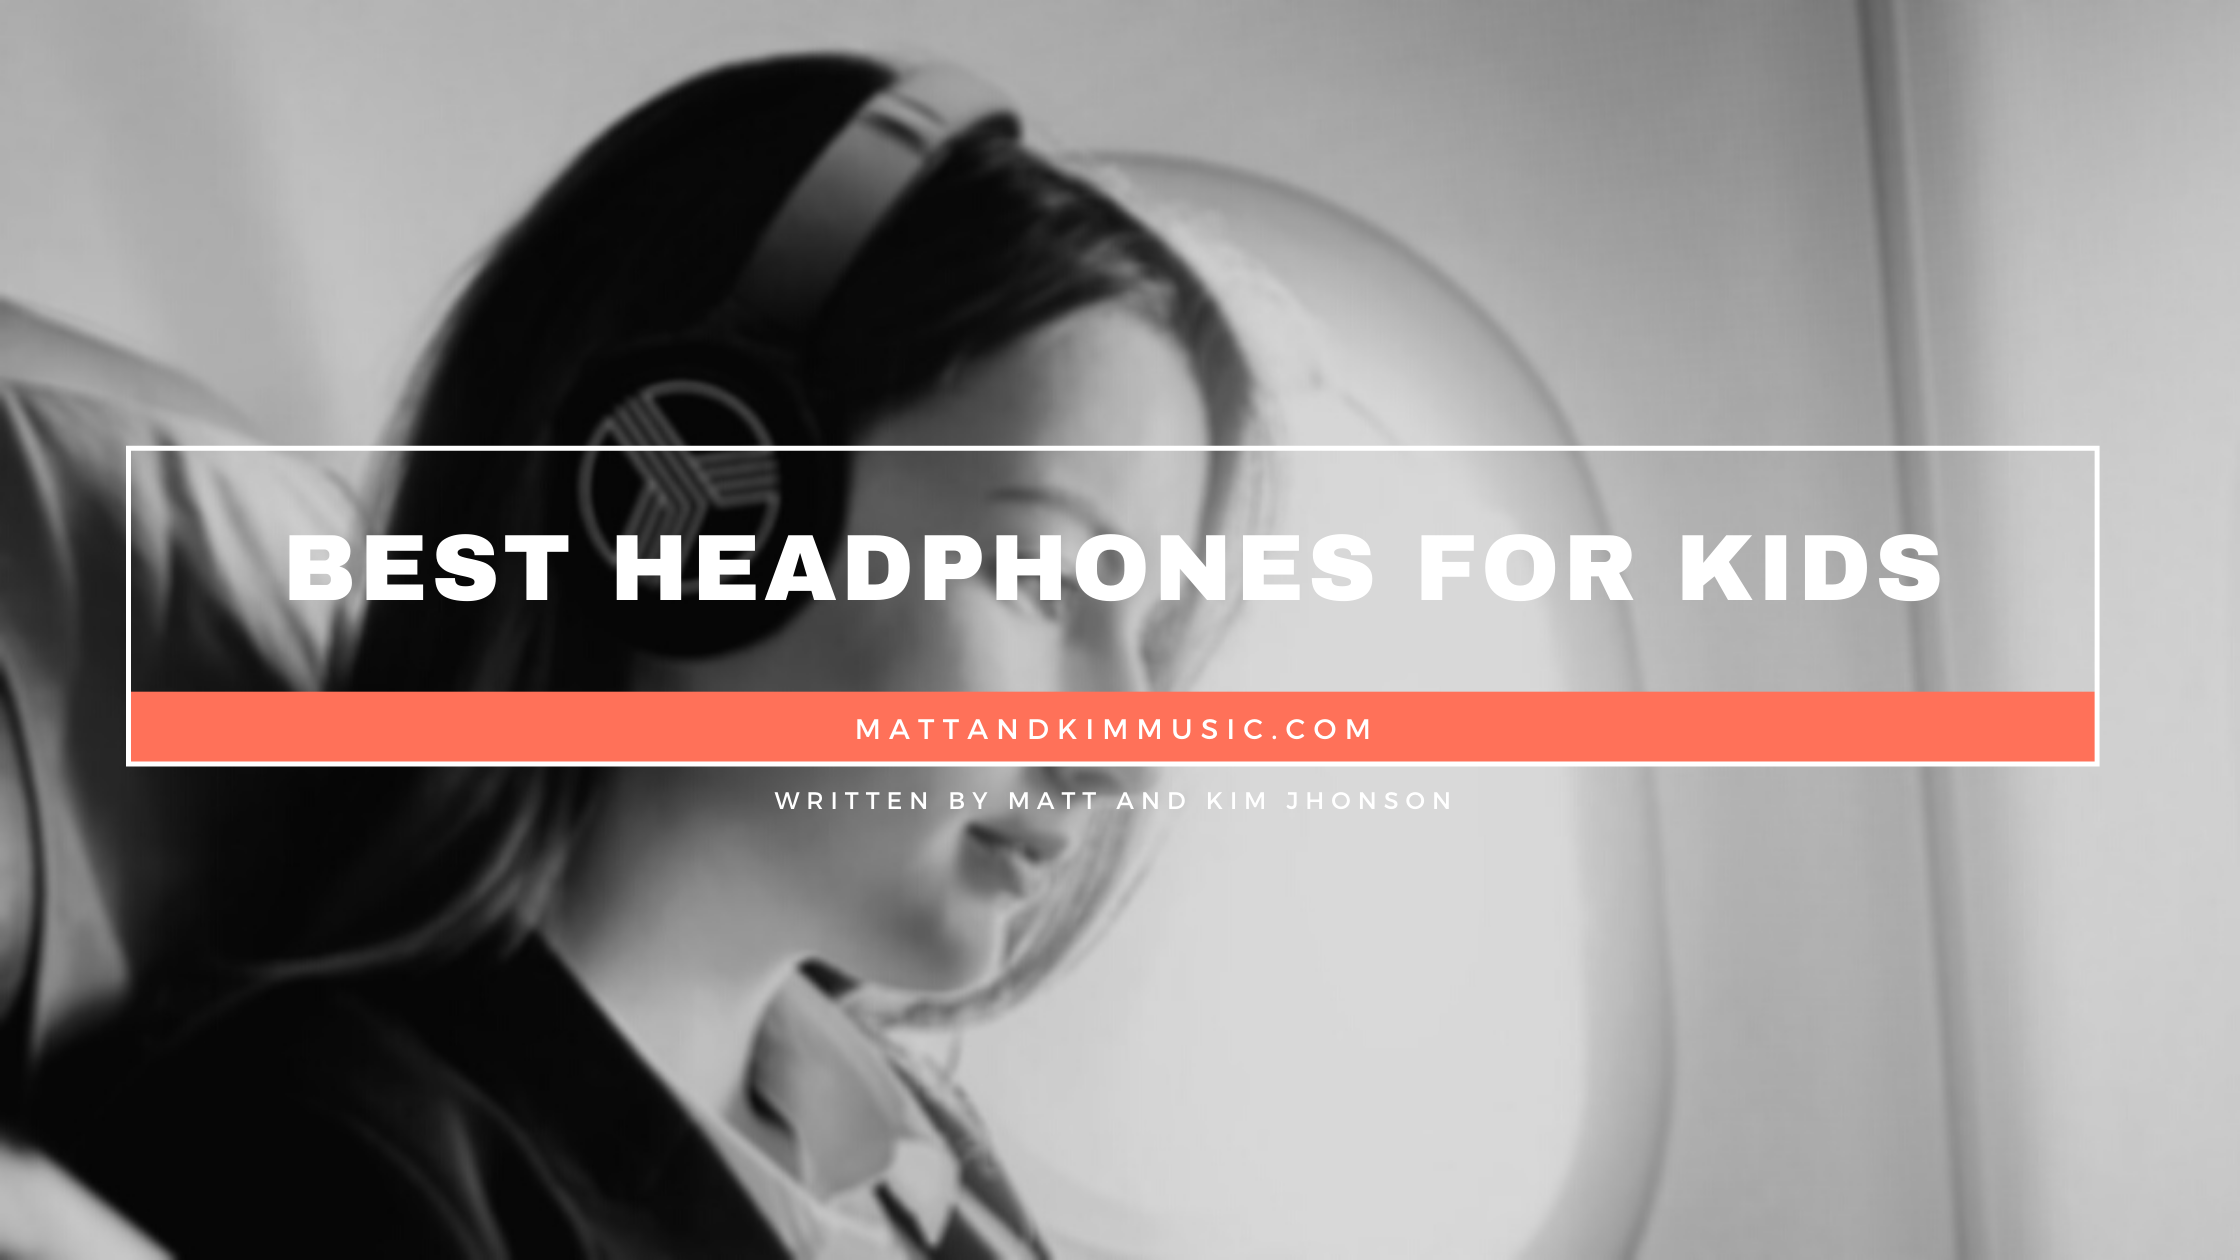 Best Headphones for Kids